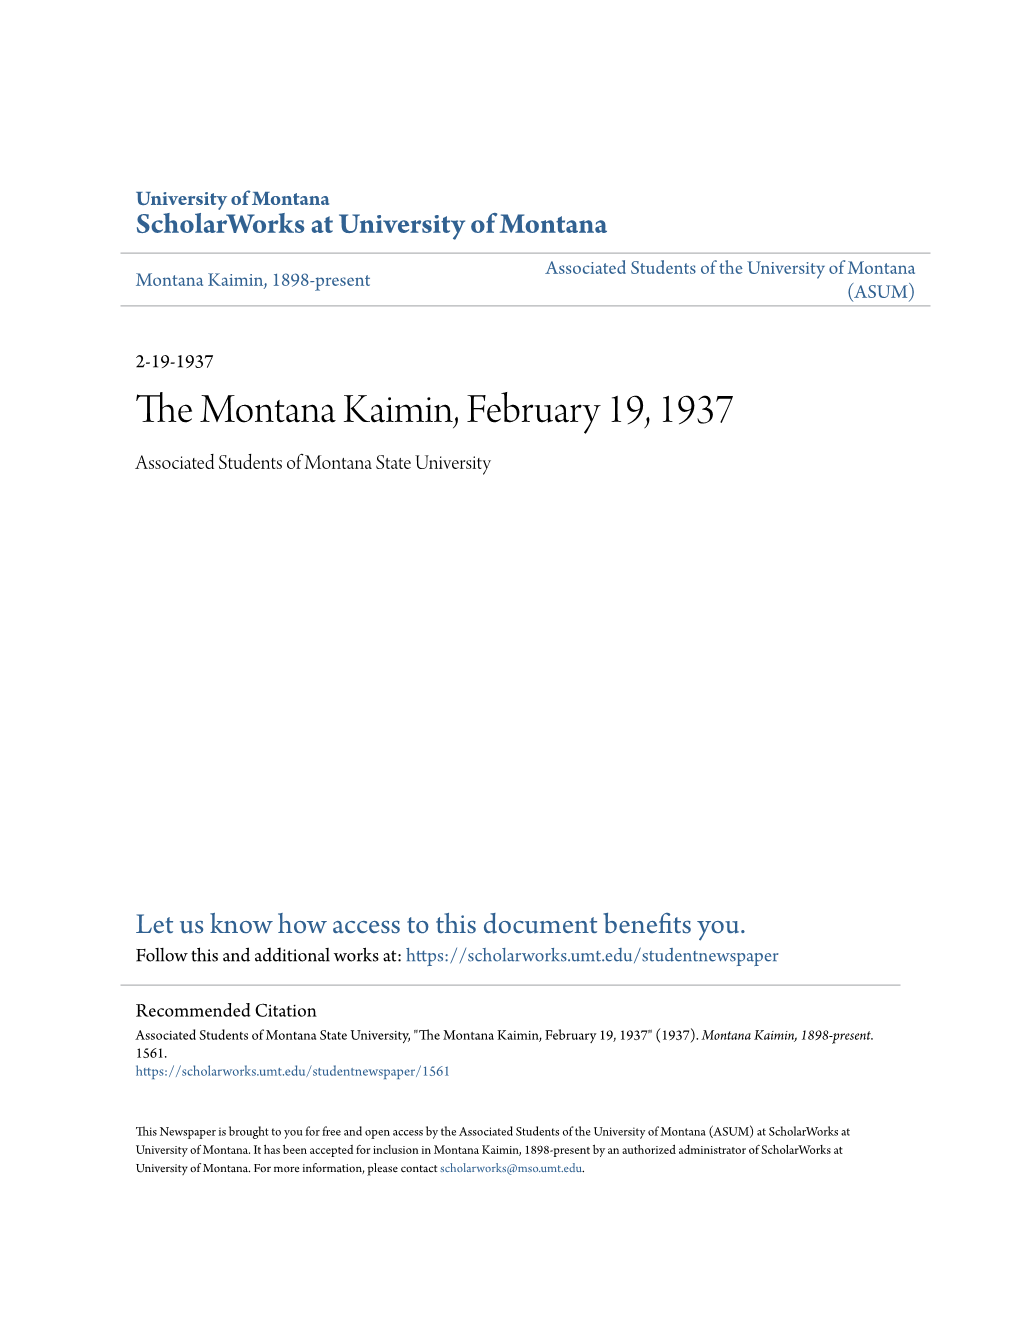 The Montana Kaimin